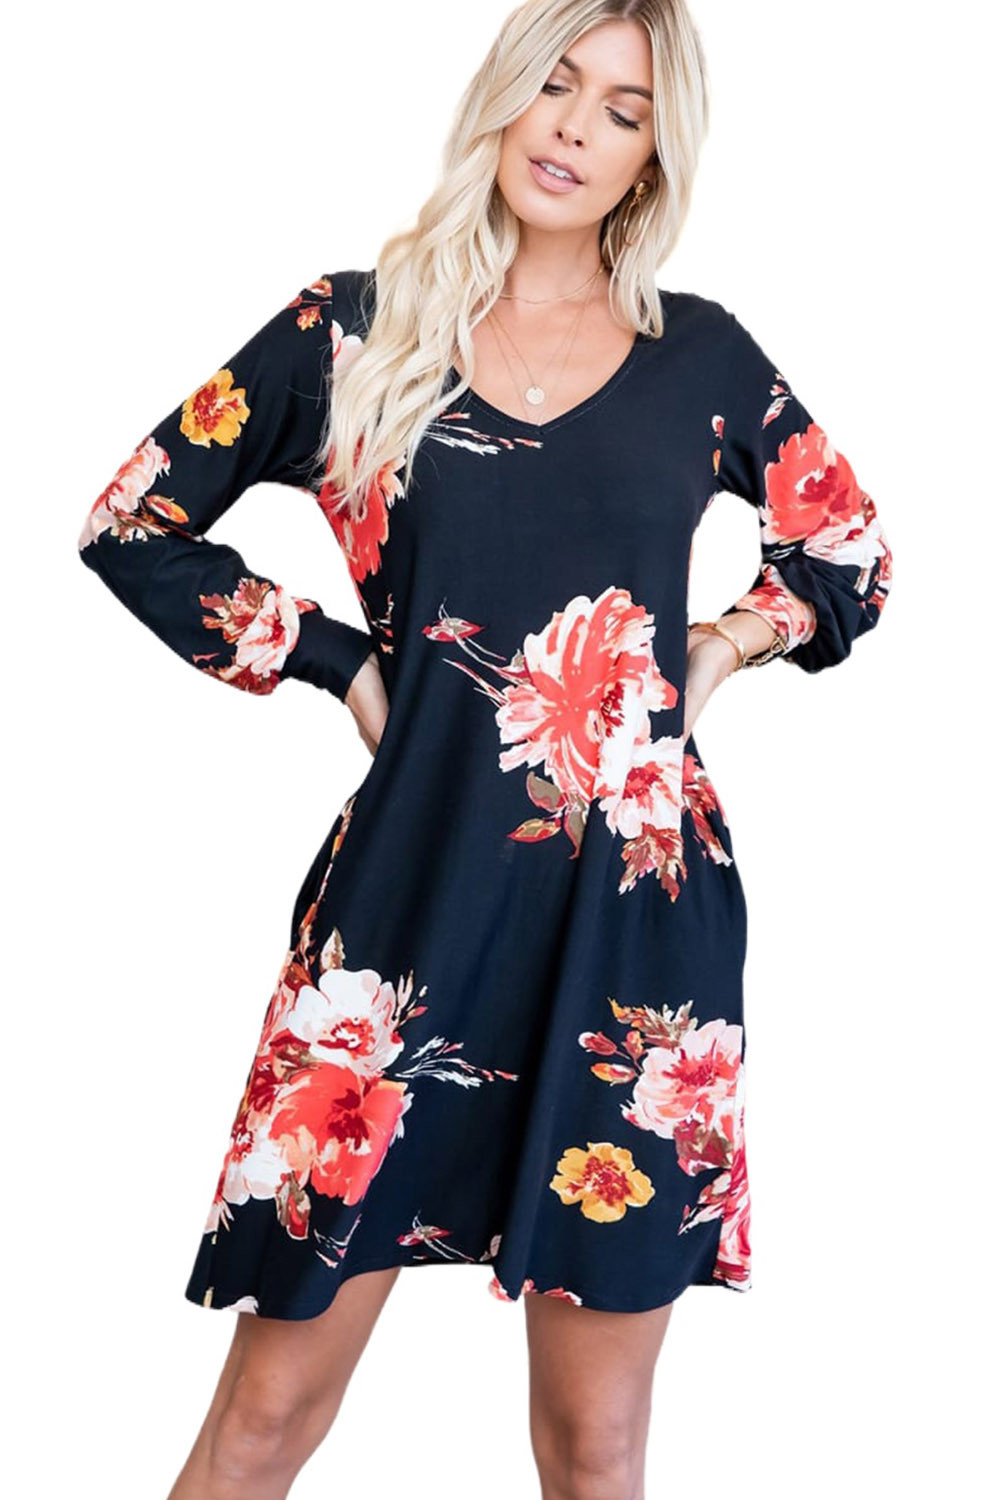 US$8.8 Black V Neck Long Sleeve Pocket Floral Dress Wholesale Online